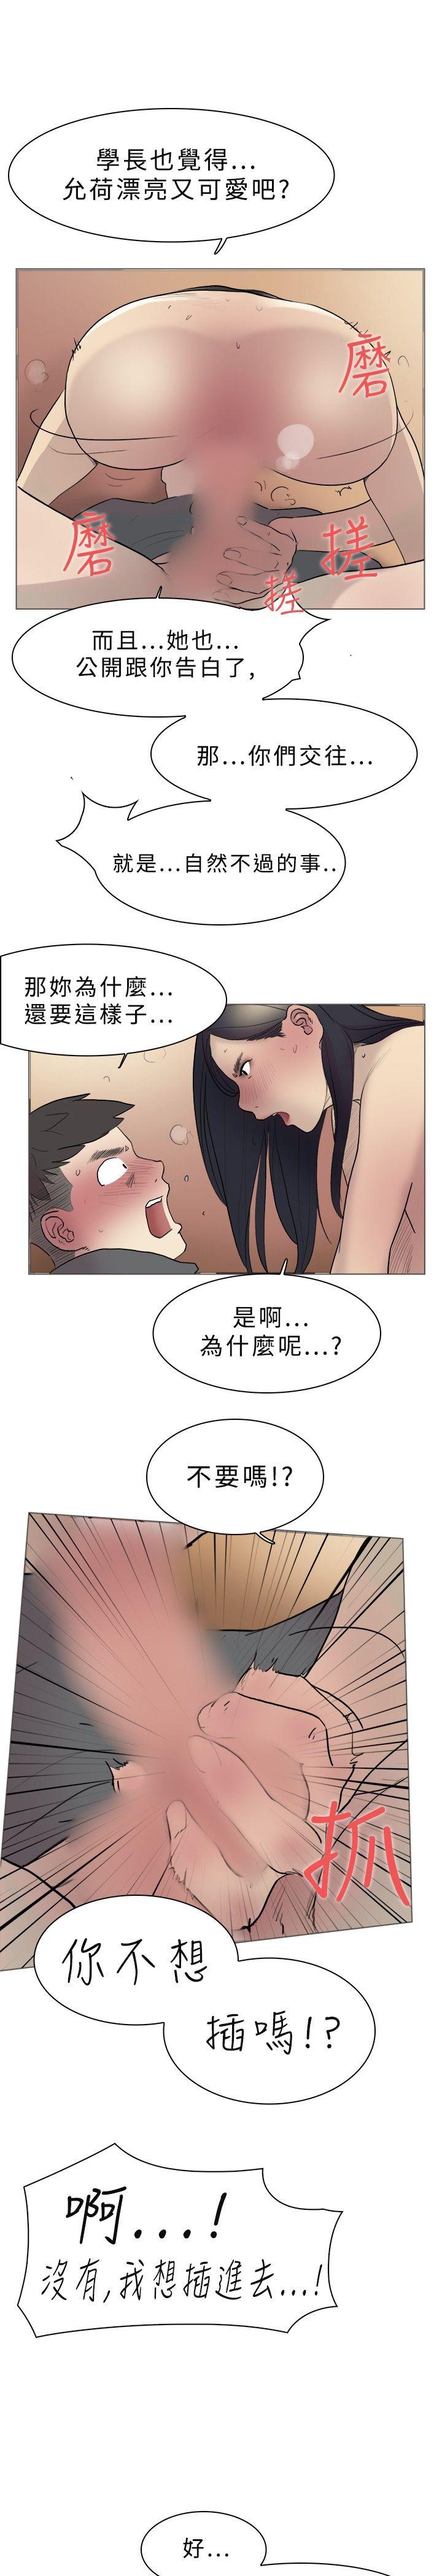 韩国污漫画 雙重戀愛 第10话 22